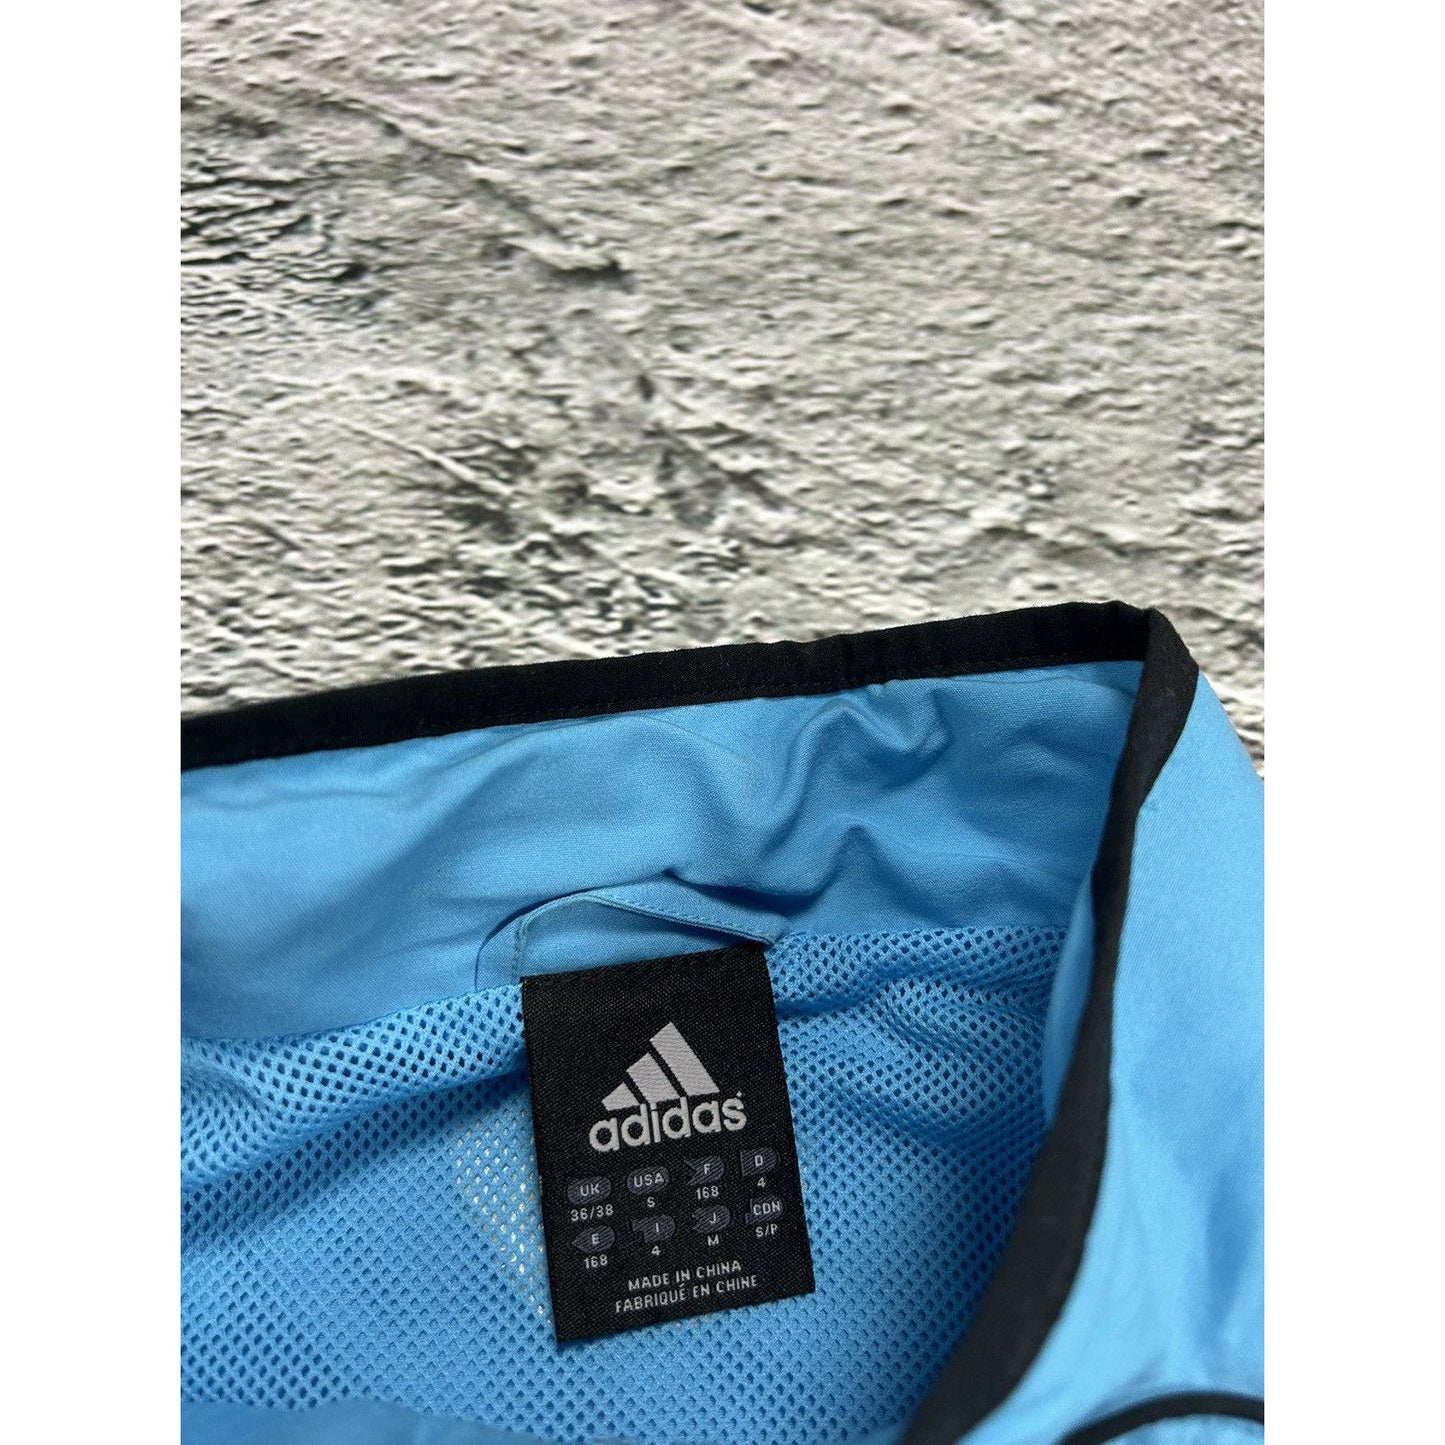 Marseille Adidas track suit black blue pants jacket vintage